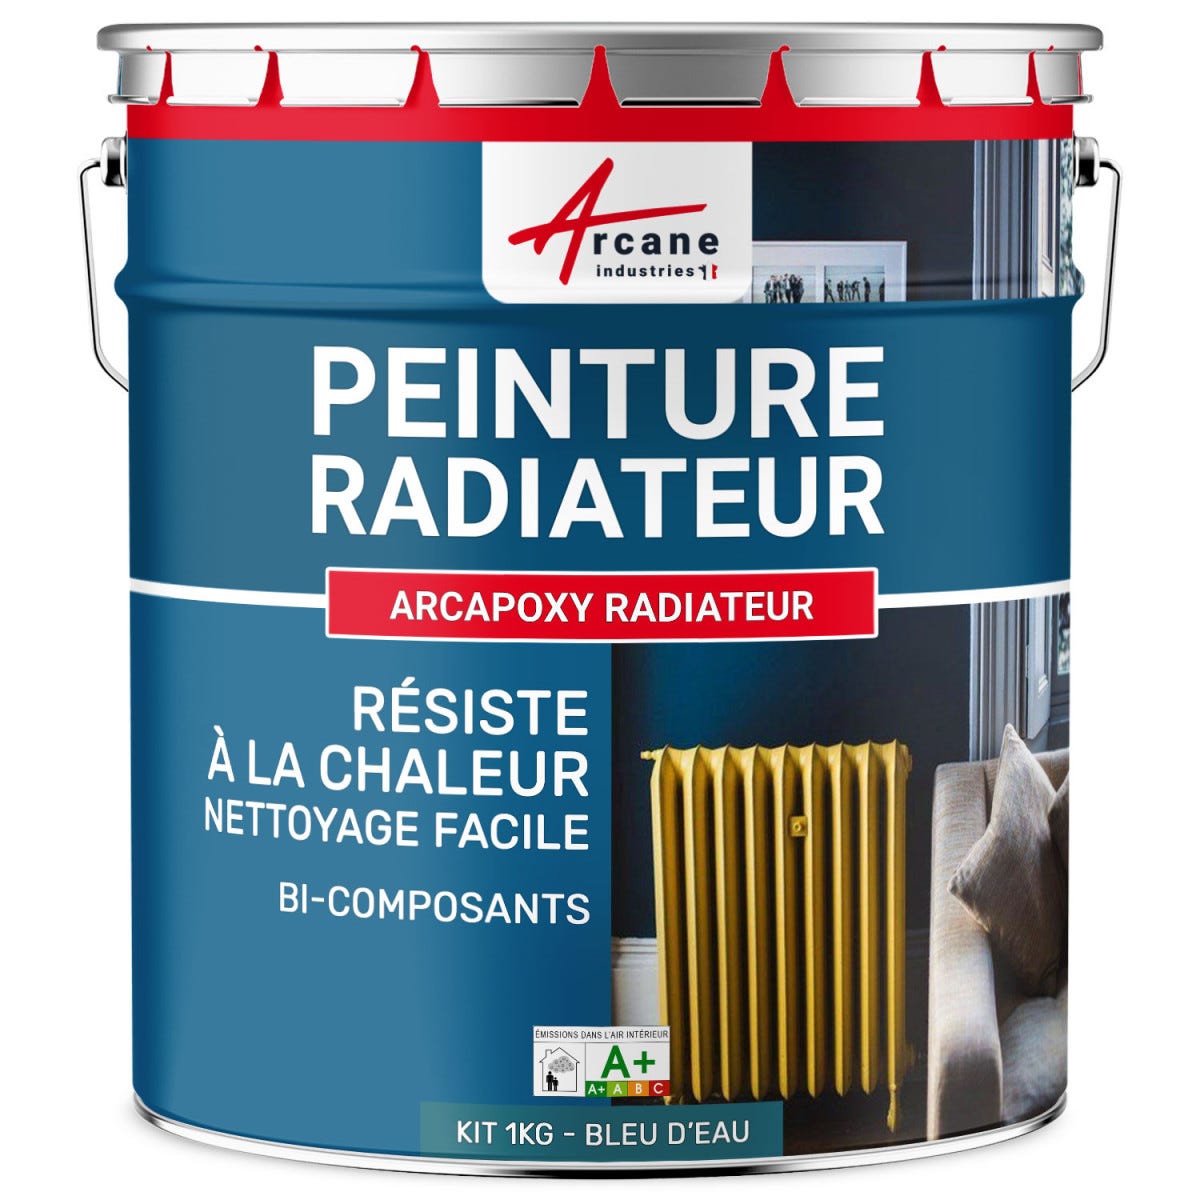 Peinture Radiateur fonte acier alu - PEINTURE RADIATEUR - 1 kg (jusqu'à 5 m² en 2 couches) - Bleu D'eau - RAL 5021 - ARCANE INDUSTRIES 6